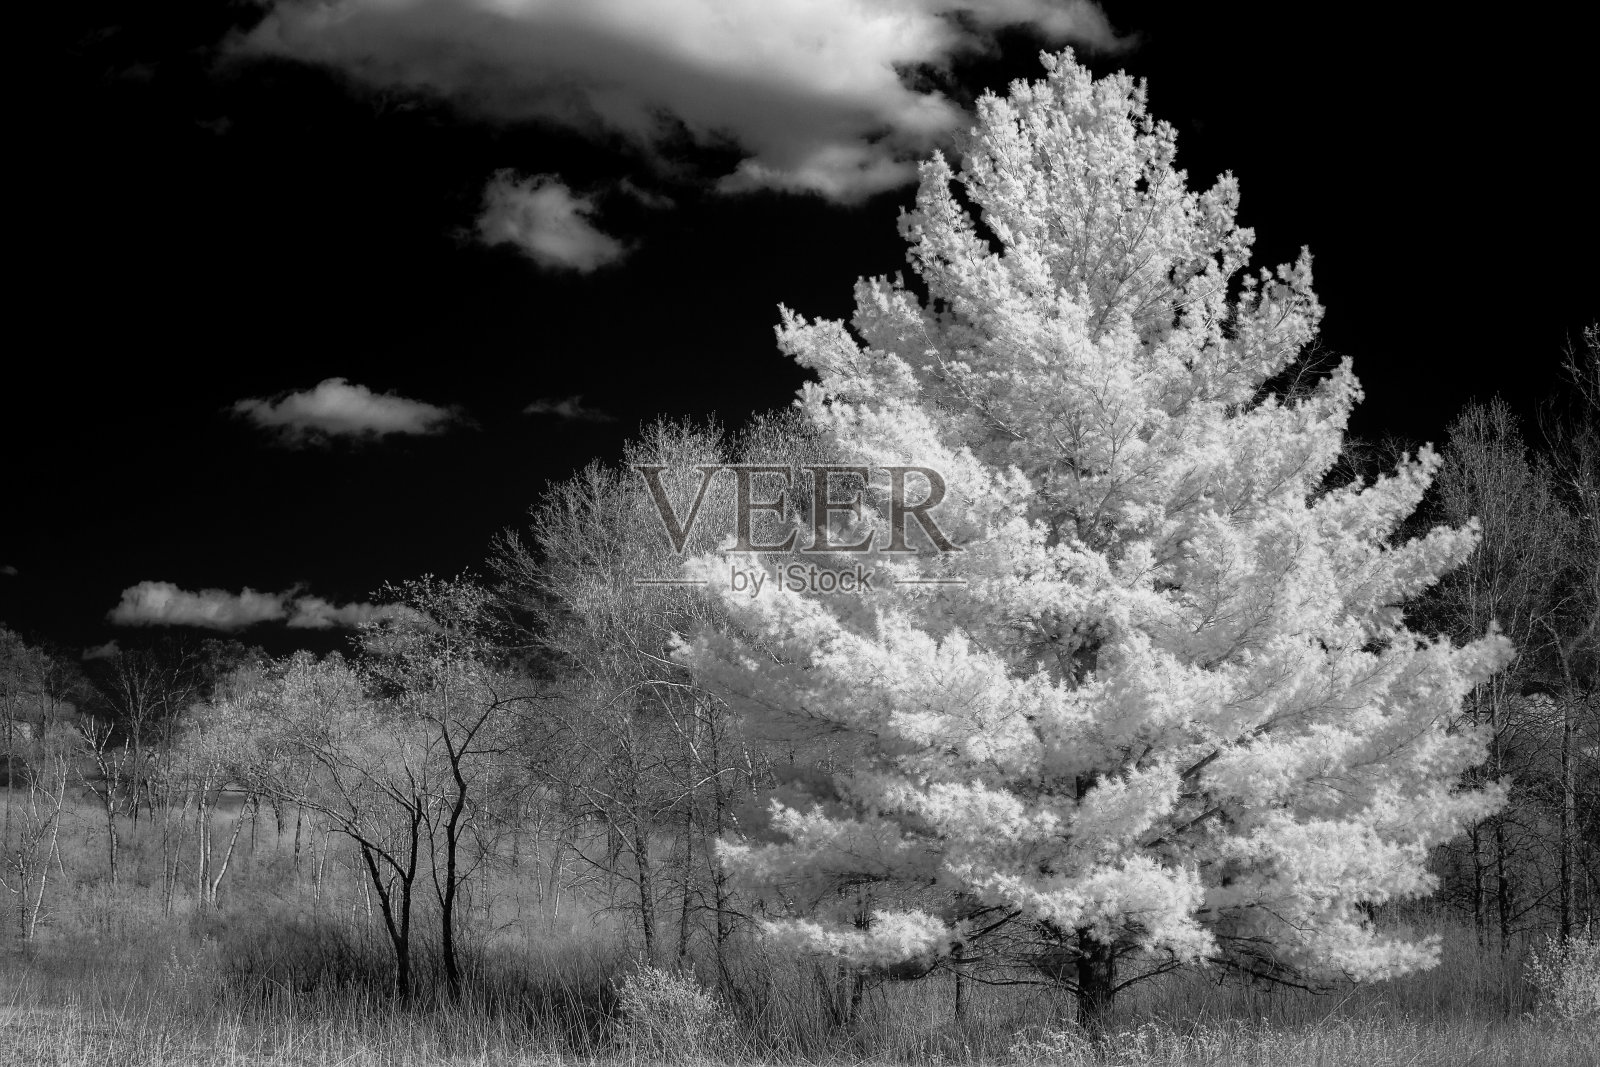 明尼苏达州早春的白松林照片摄影图片